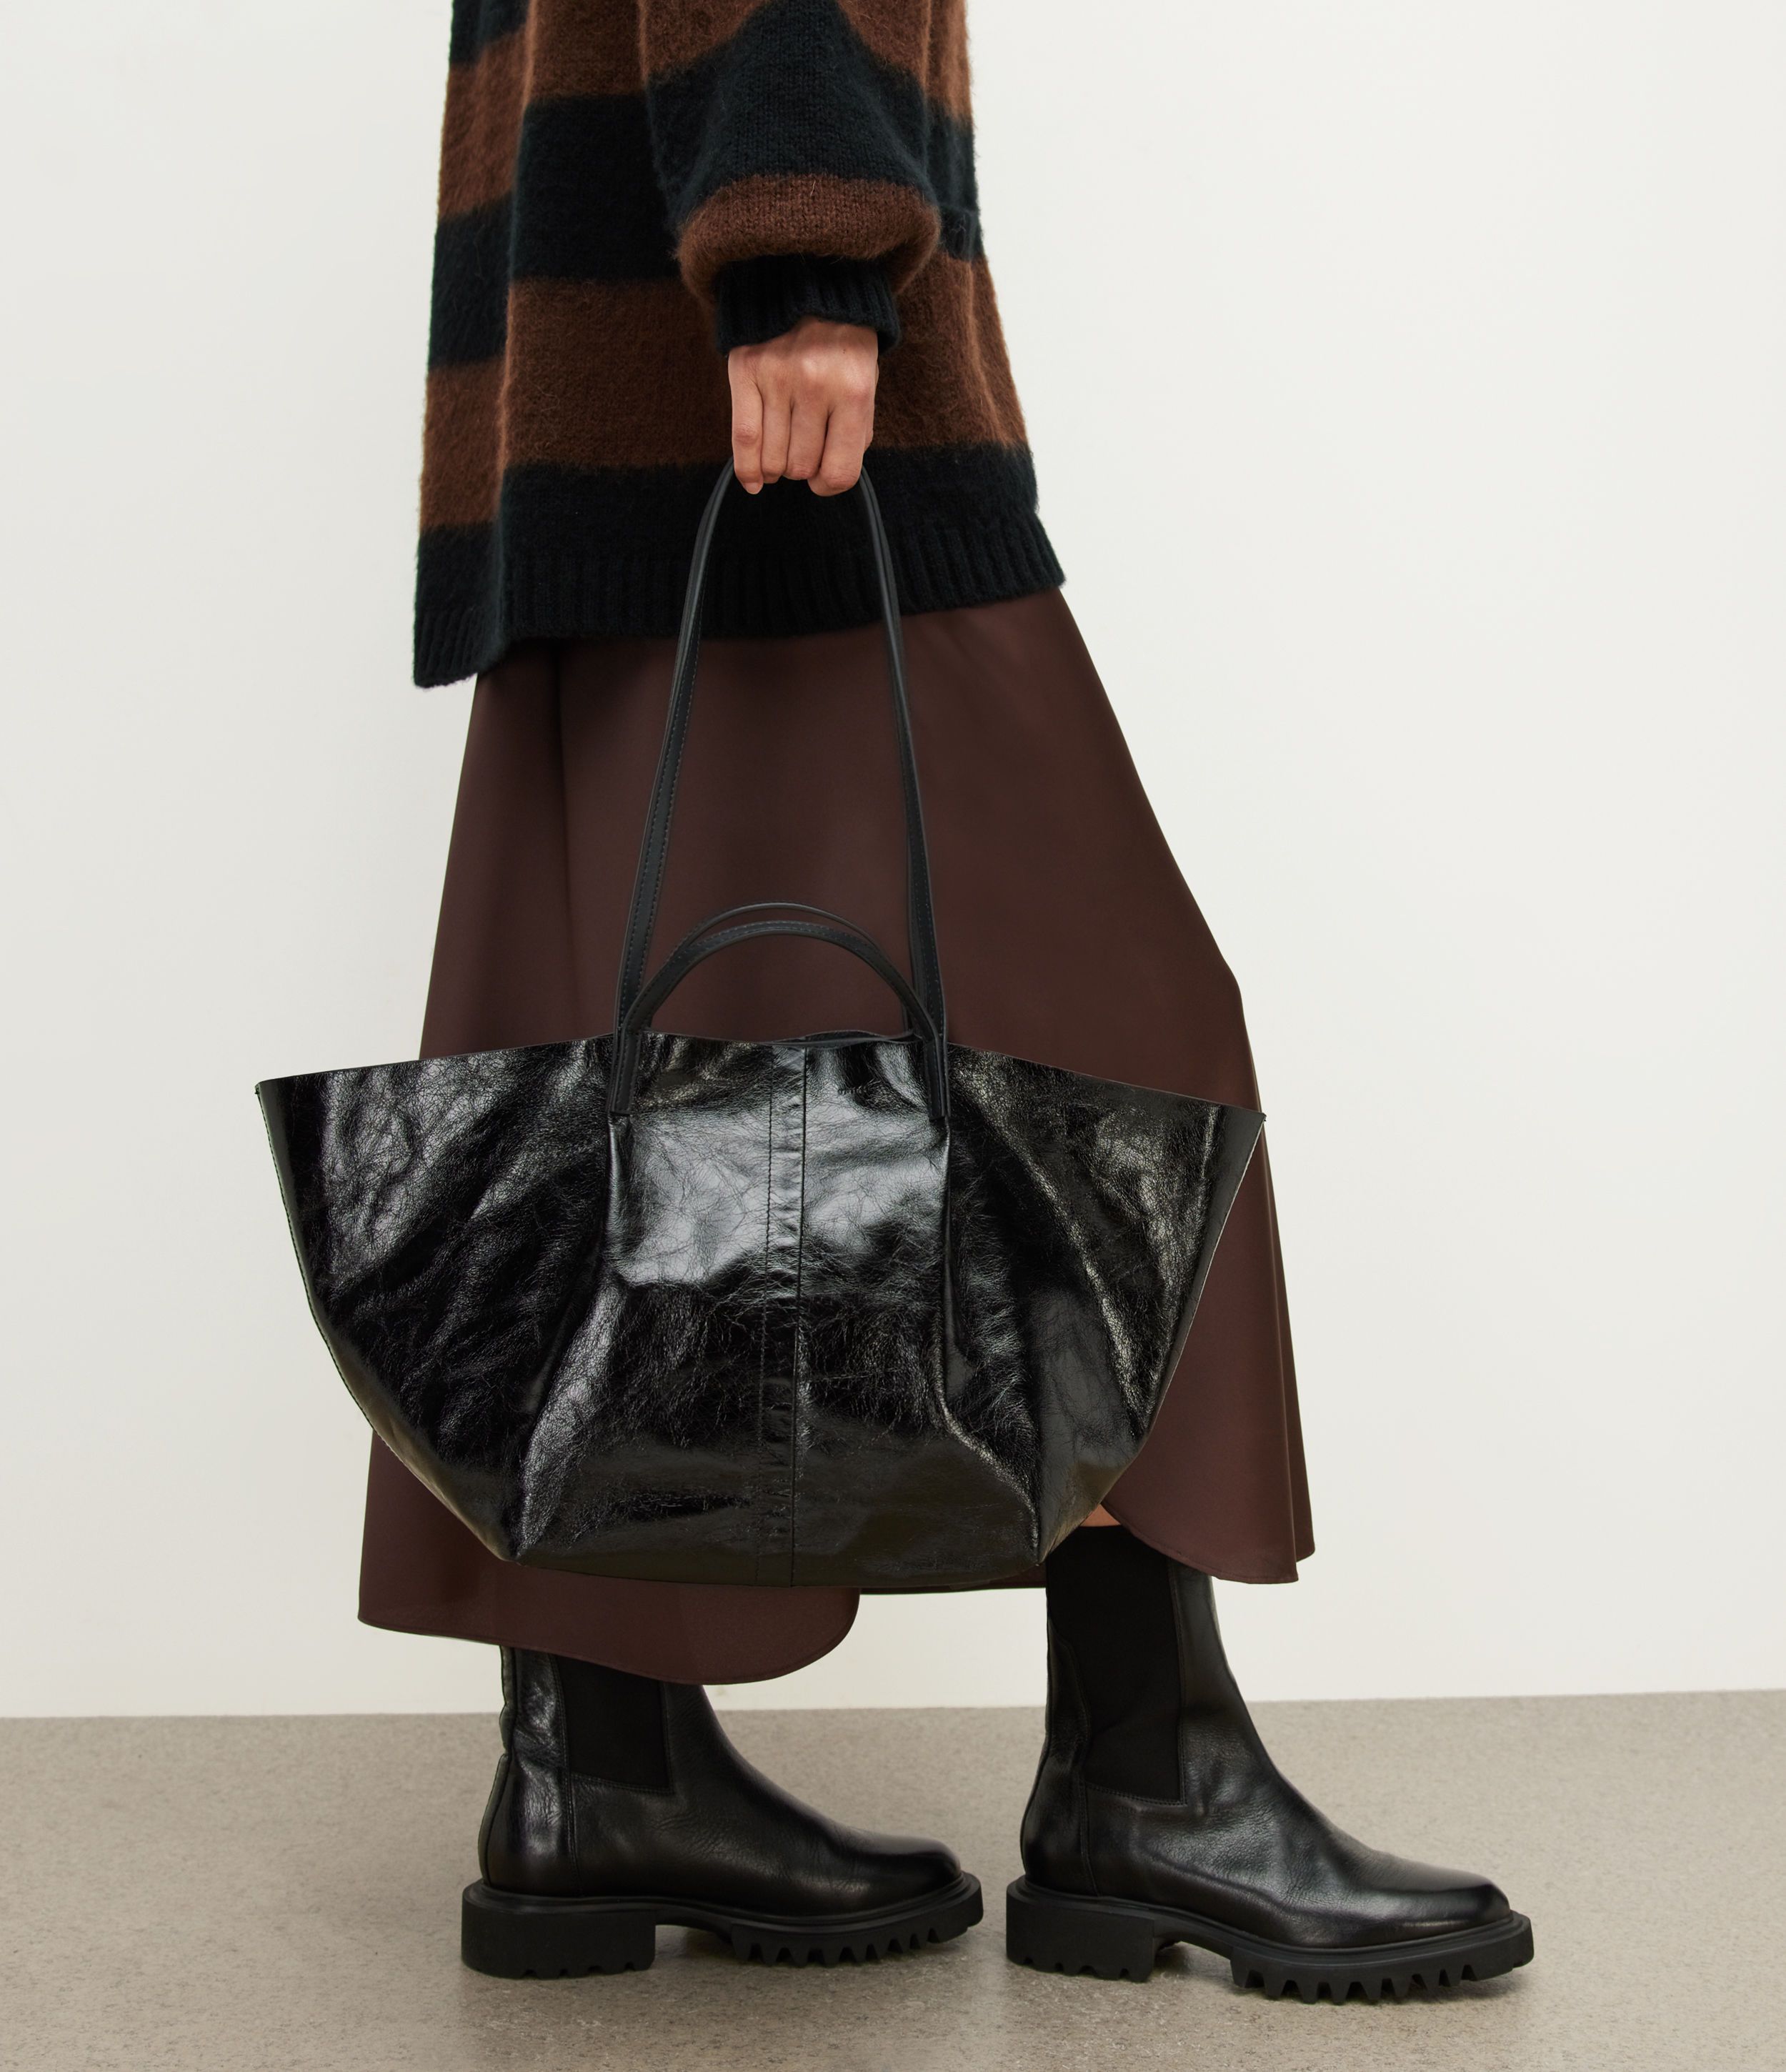 Odette Leather East West Tote Bag | AllSaints US